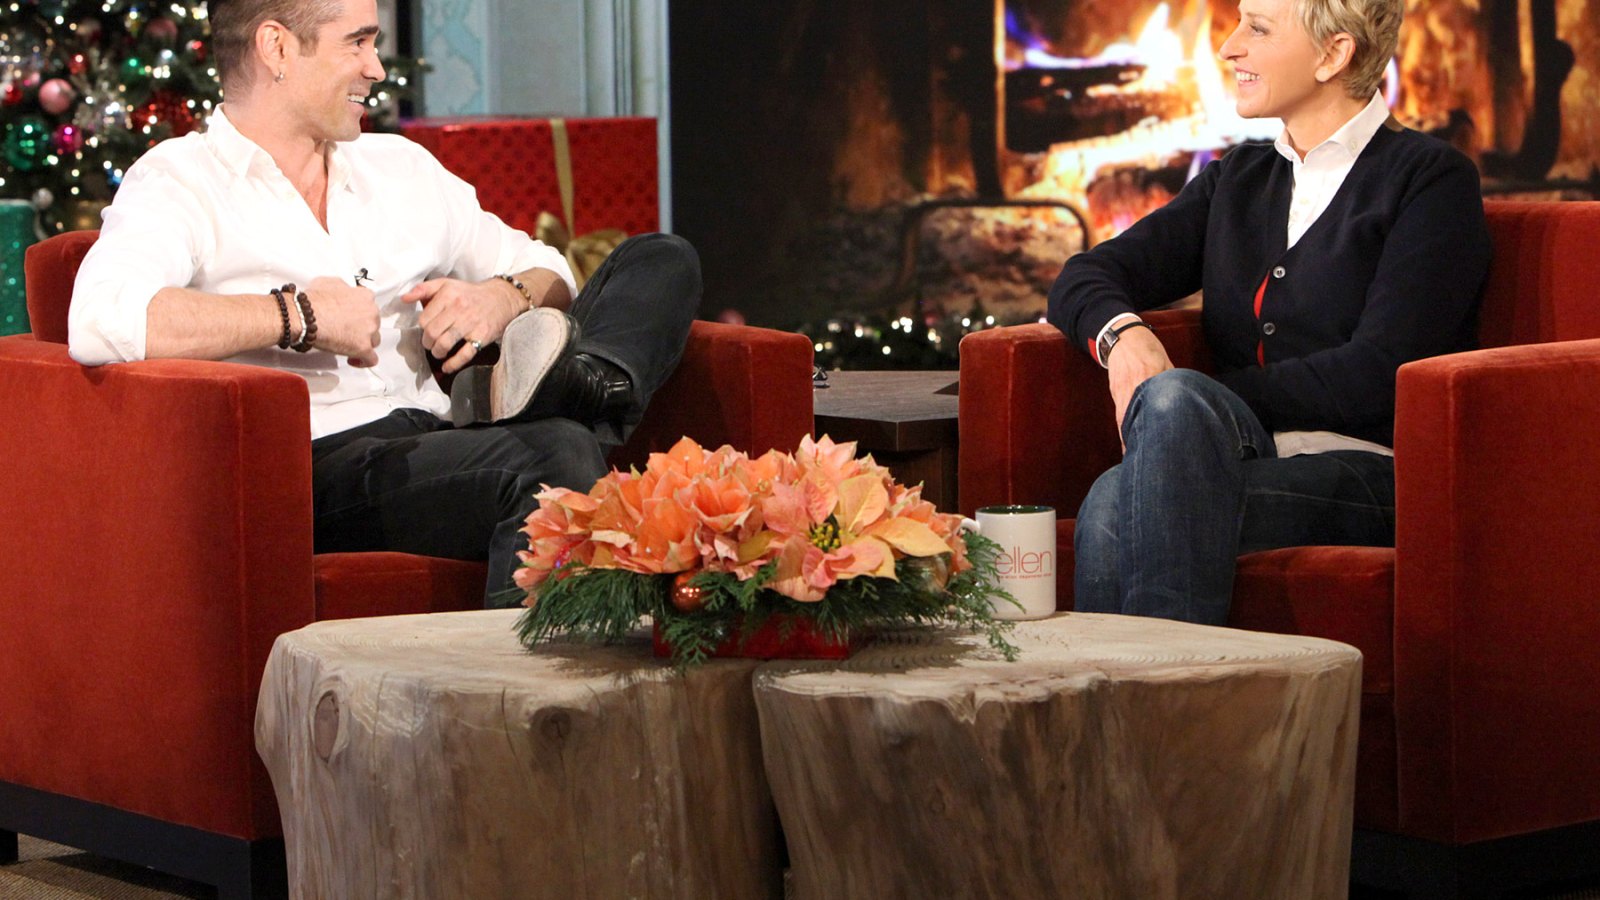 Colin Farrell on 'The Ellen DeGeneres Show' on Dec. 16, 2013